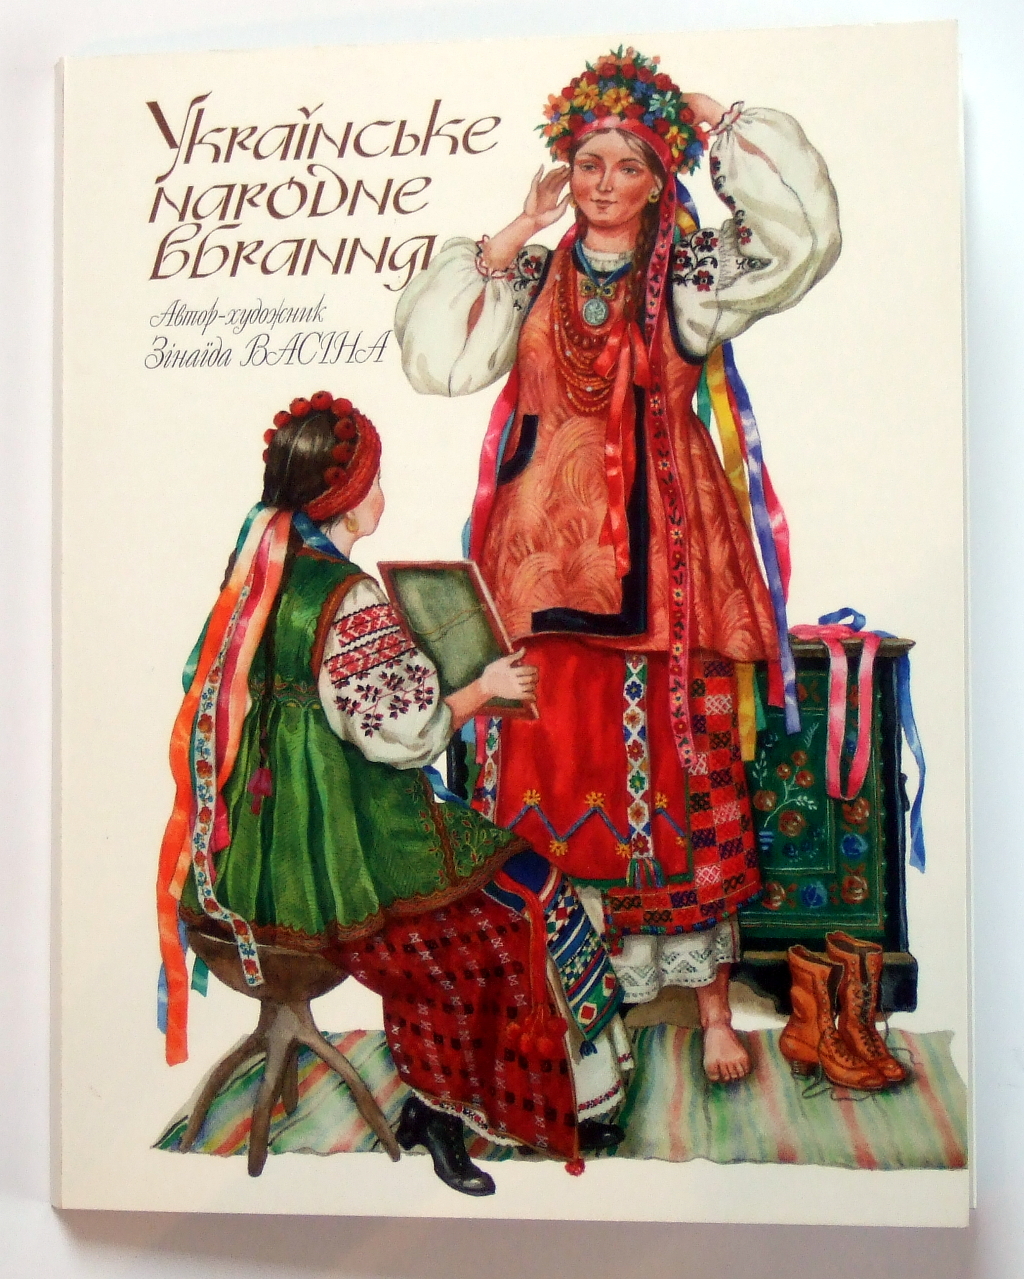 Печать листовок «Українське народне вбрання». Полиграфия типографии Макрос, изготовление рекламных листовок, спецификация 958991-1